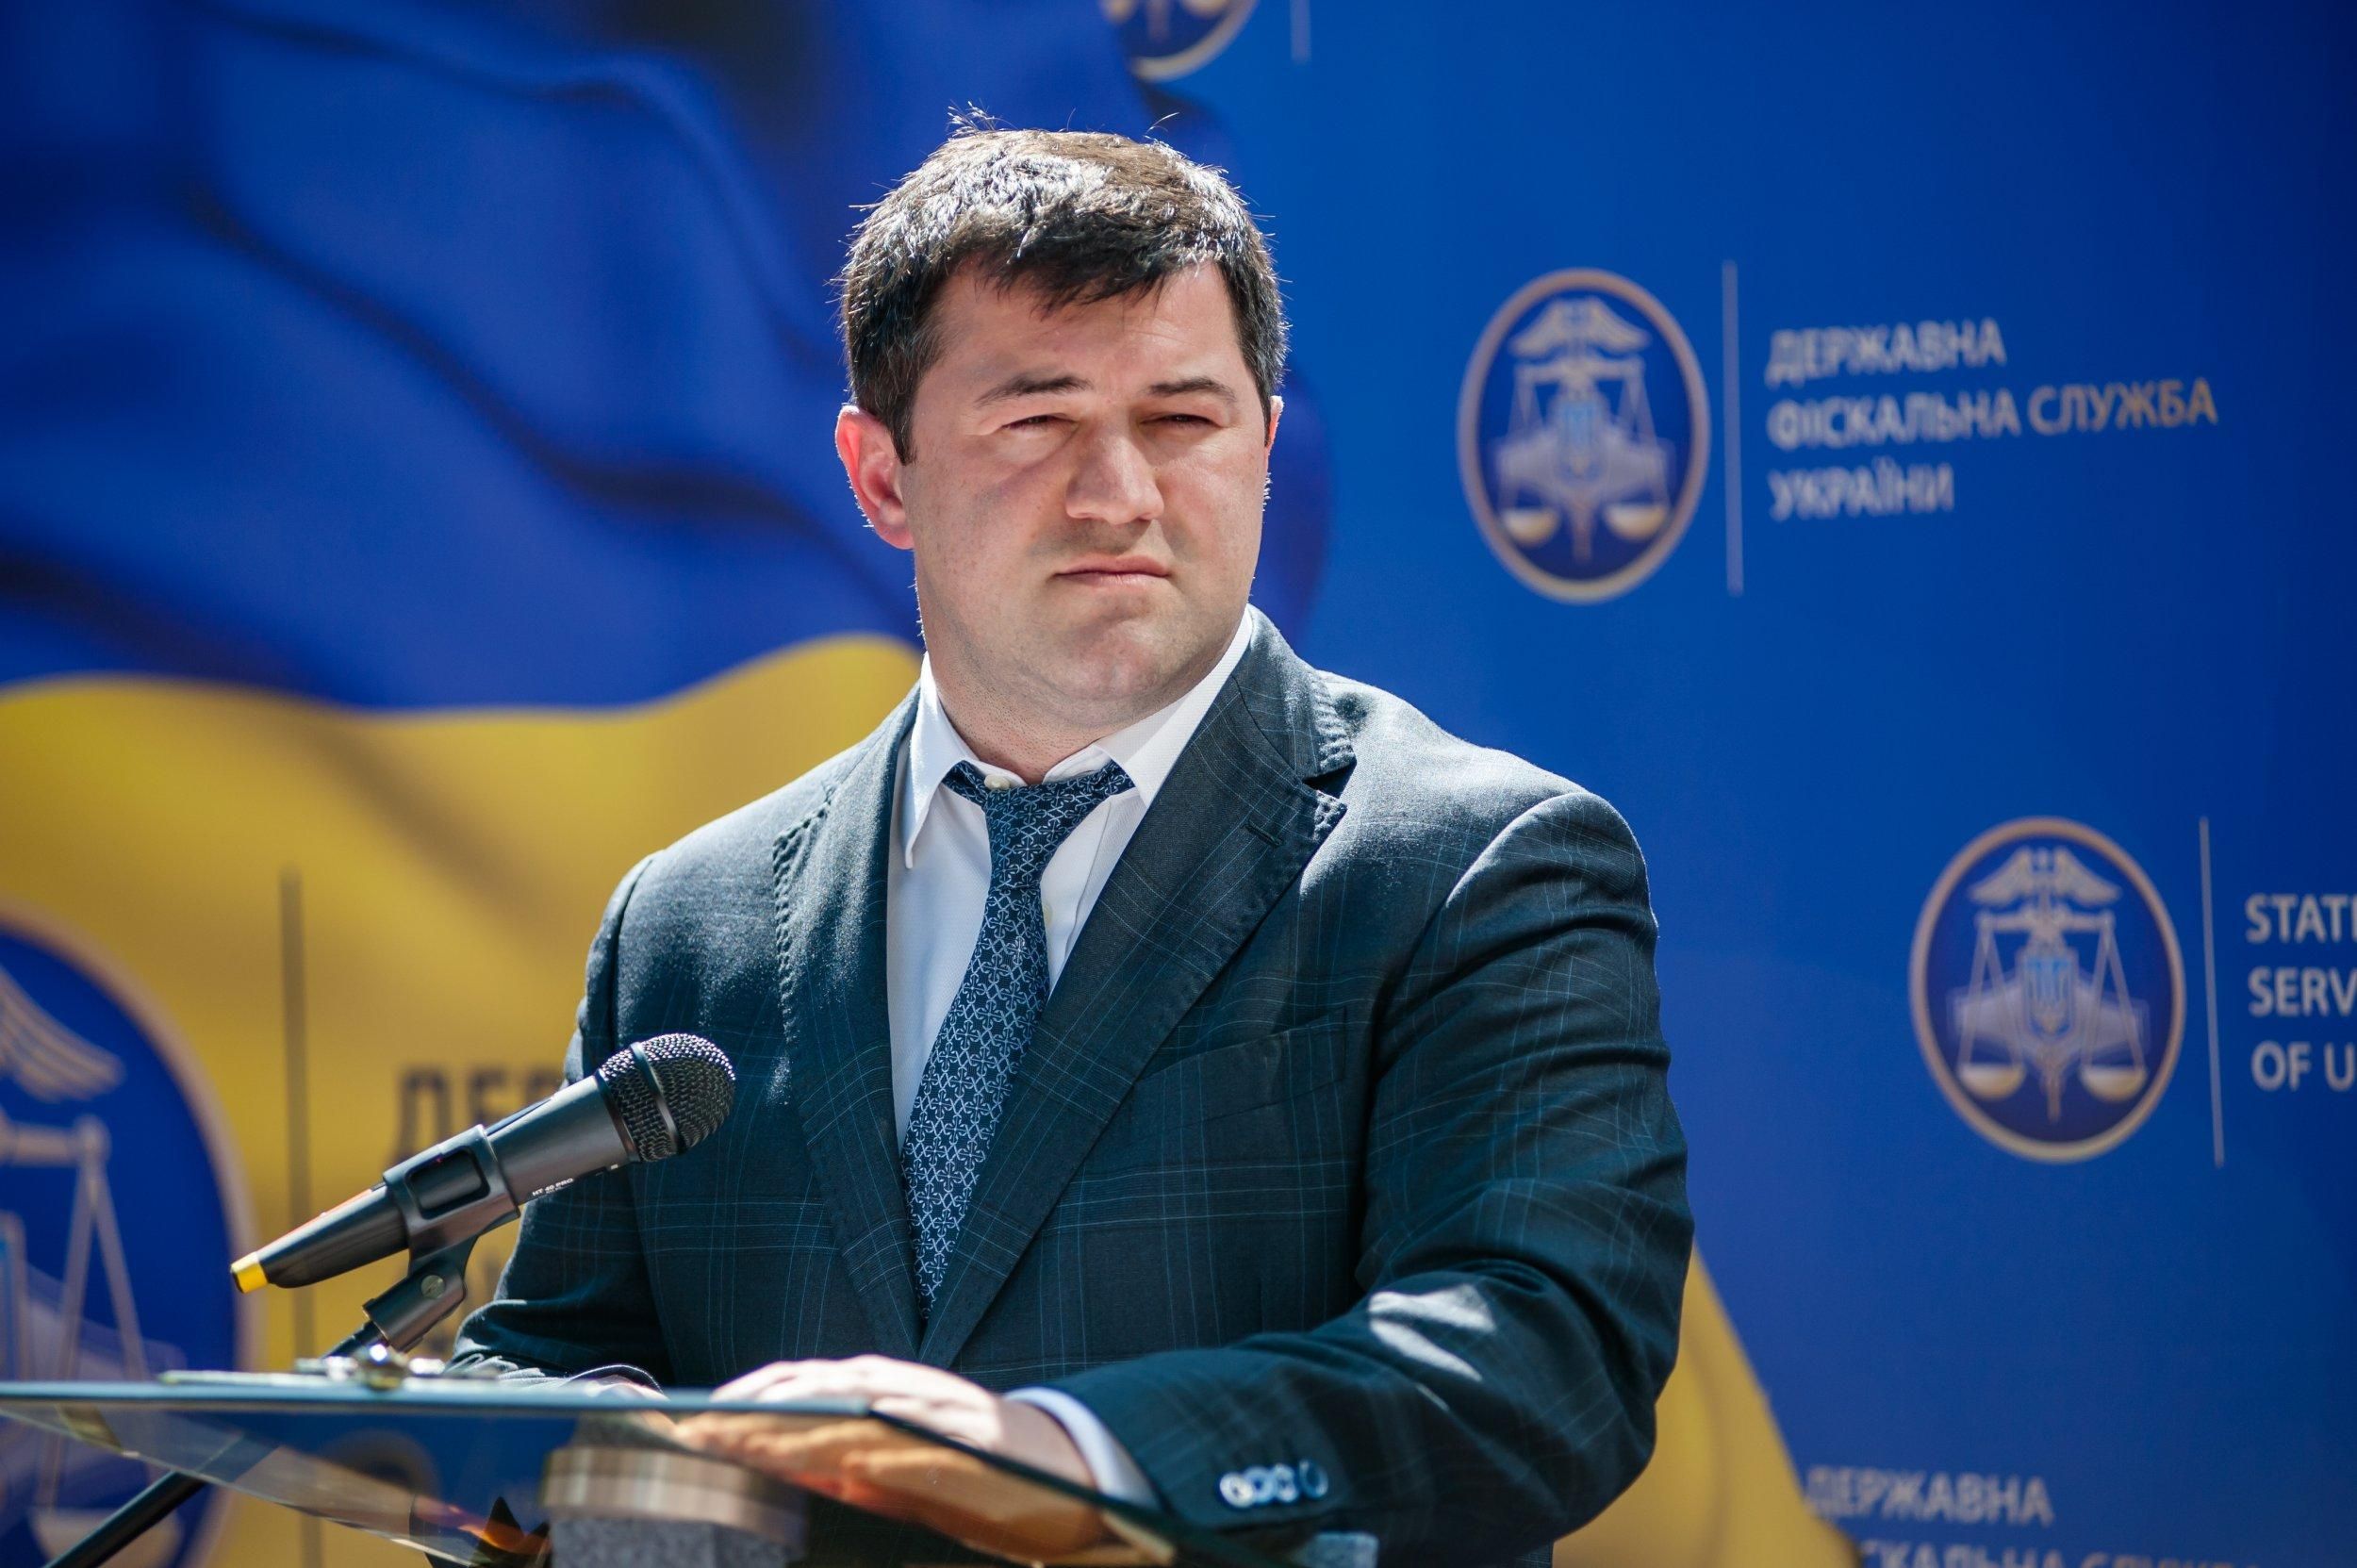 Роман Насиров - биография кандидата в президенты Украины 2019